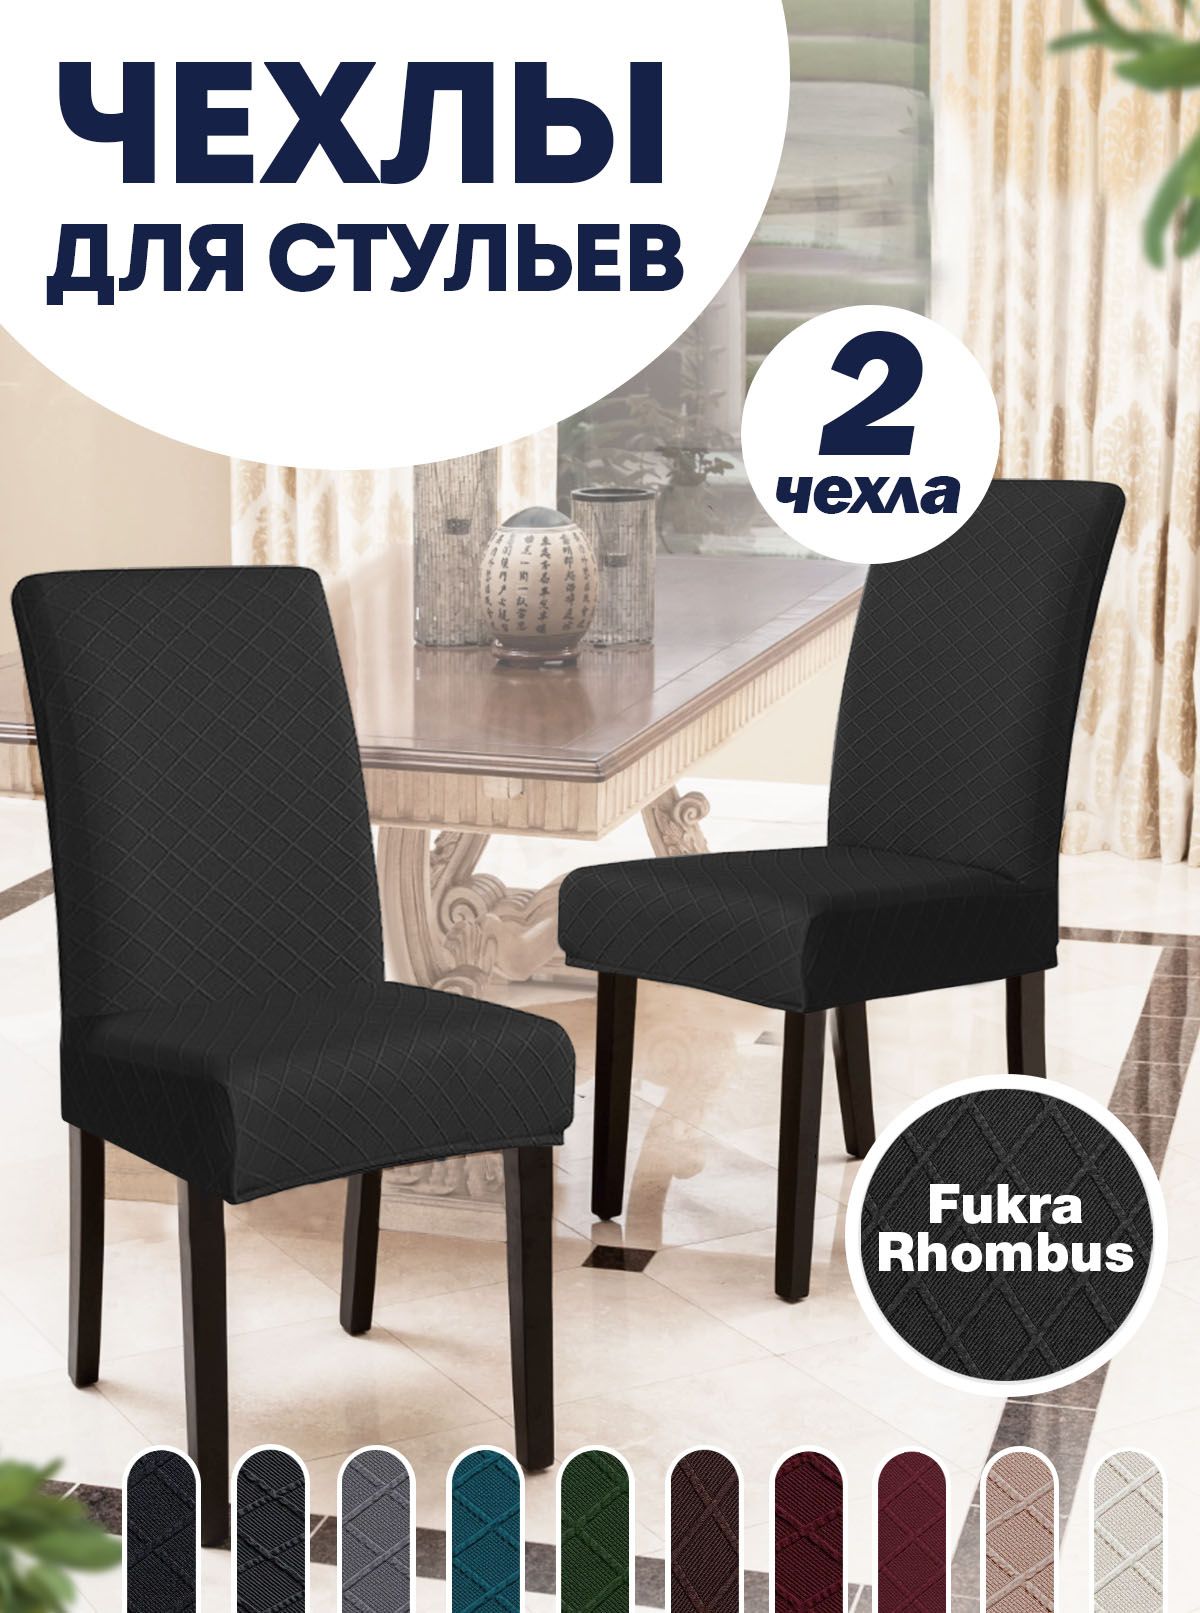 Чехлы на стулья со спинкой - купить комплект чехлов на кухонные стулья в Москве в интернет-магазине